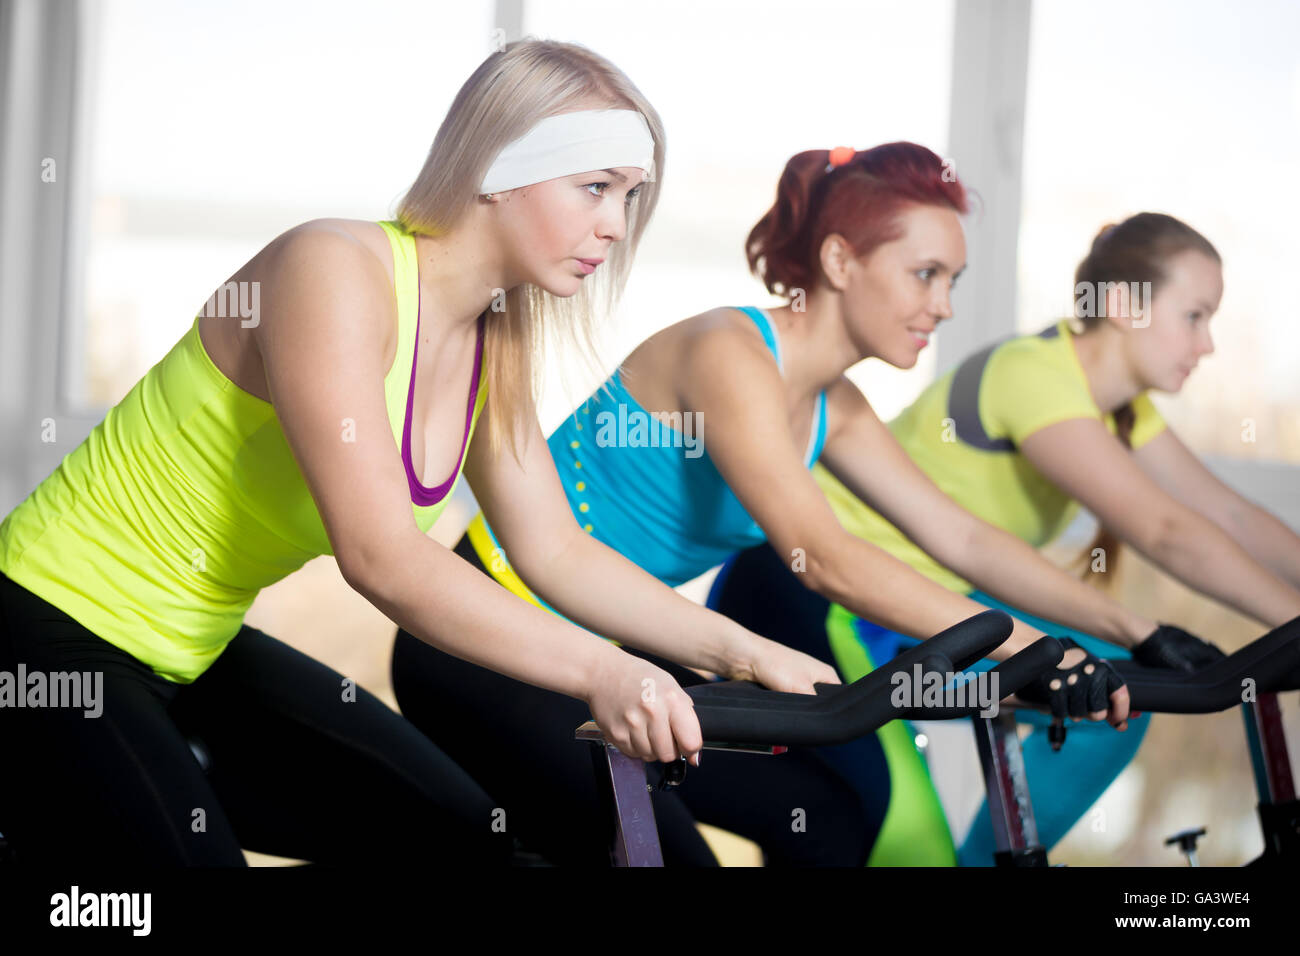 La pratica di fitness, gruppo di montare tre femmine bellissime escursioni in bicicletta in sports club, facendo esercizi cardio per dimagrire in classe Foto Stock